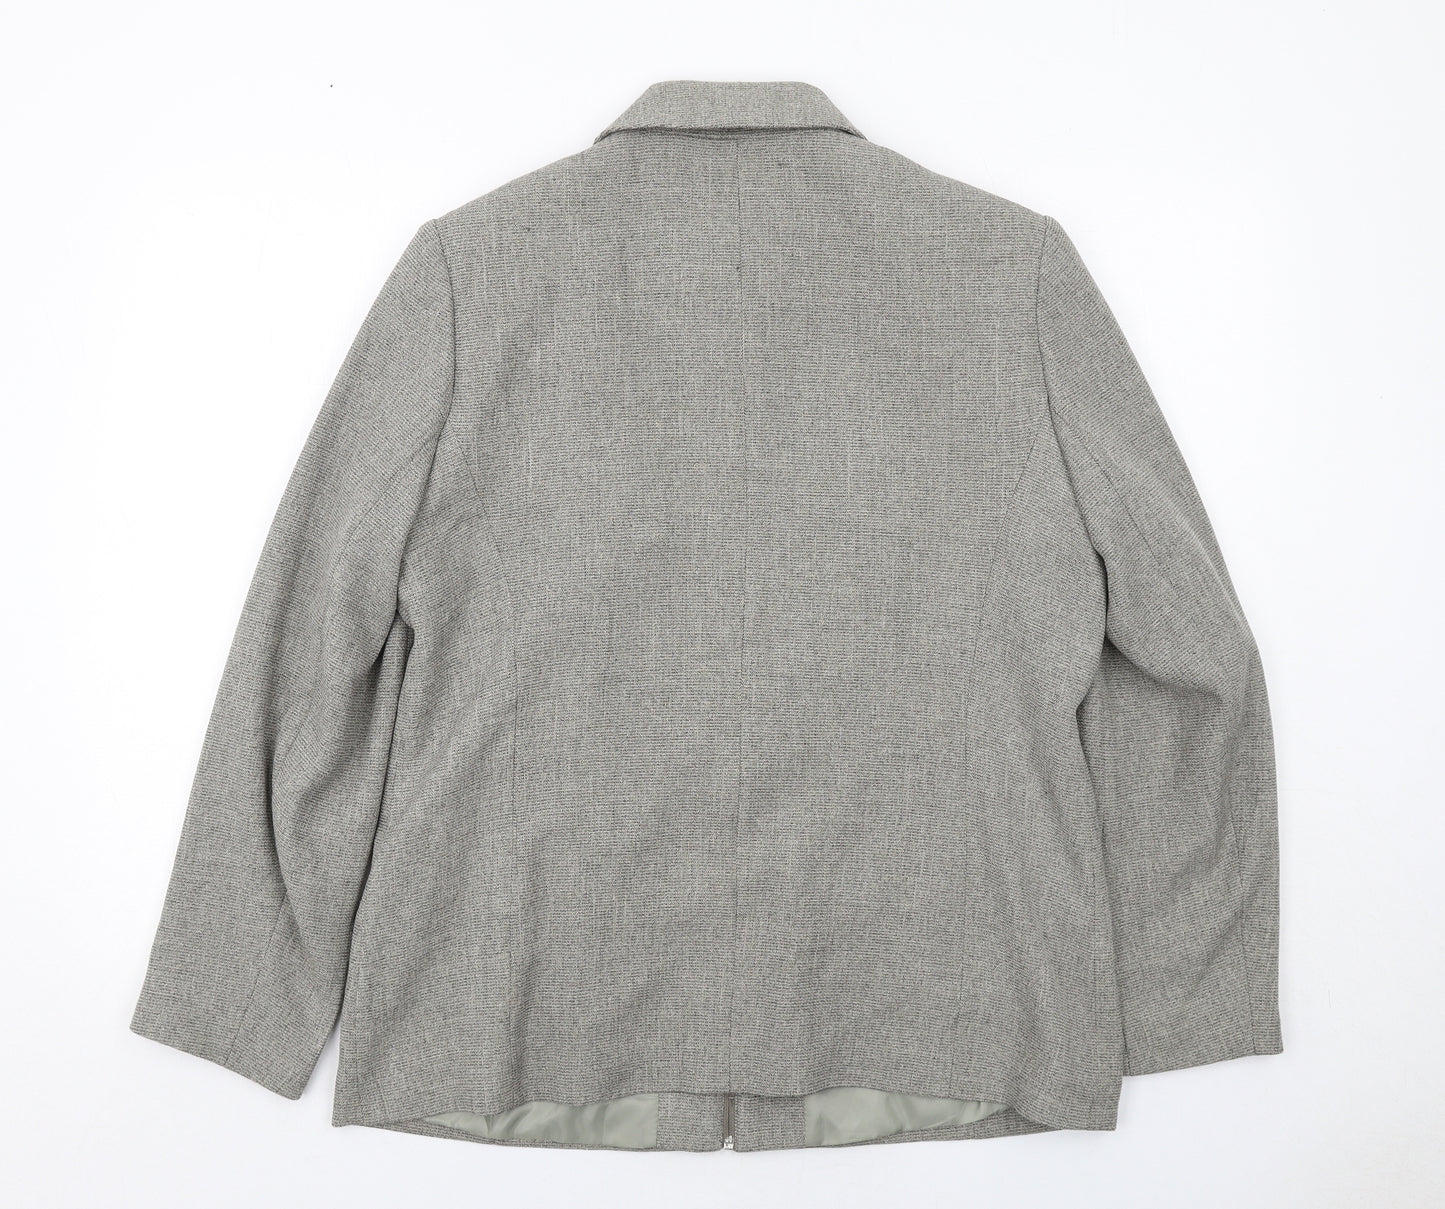 AMARANTO Womens Grey Geometric Jacket Size 16 Zip